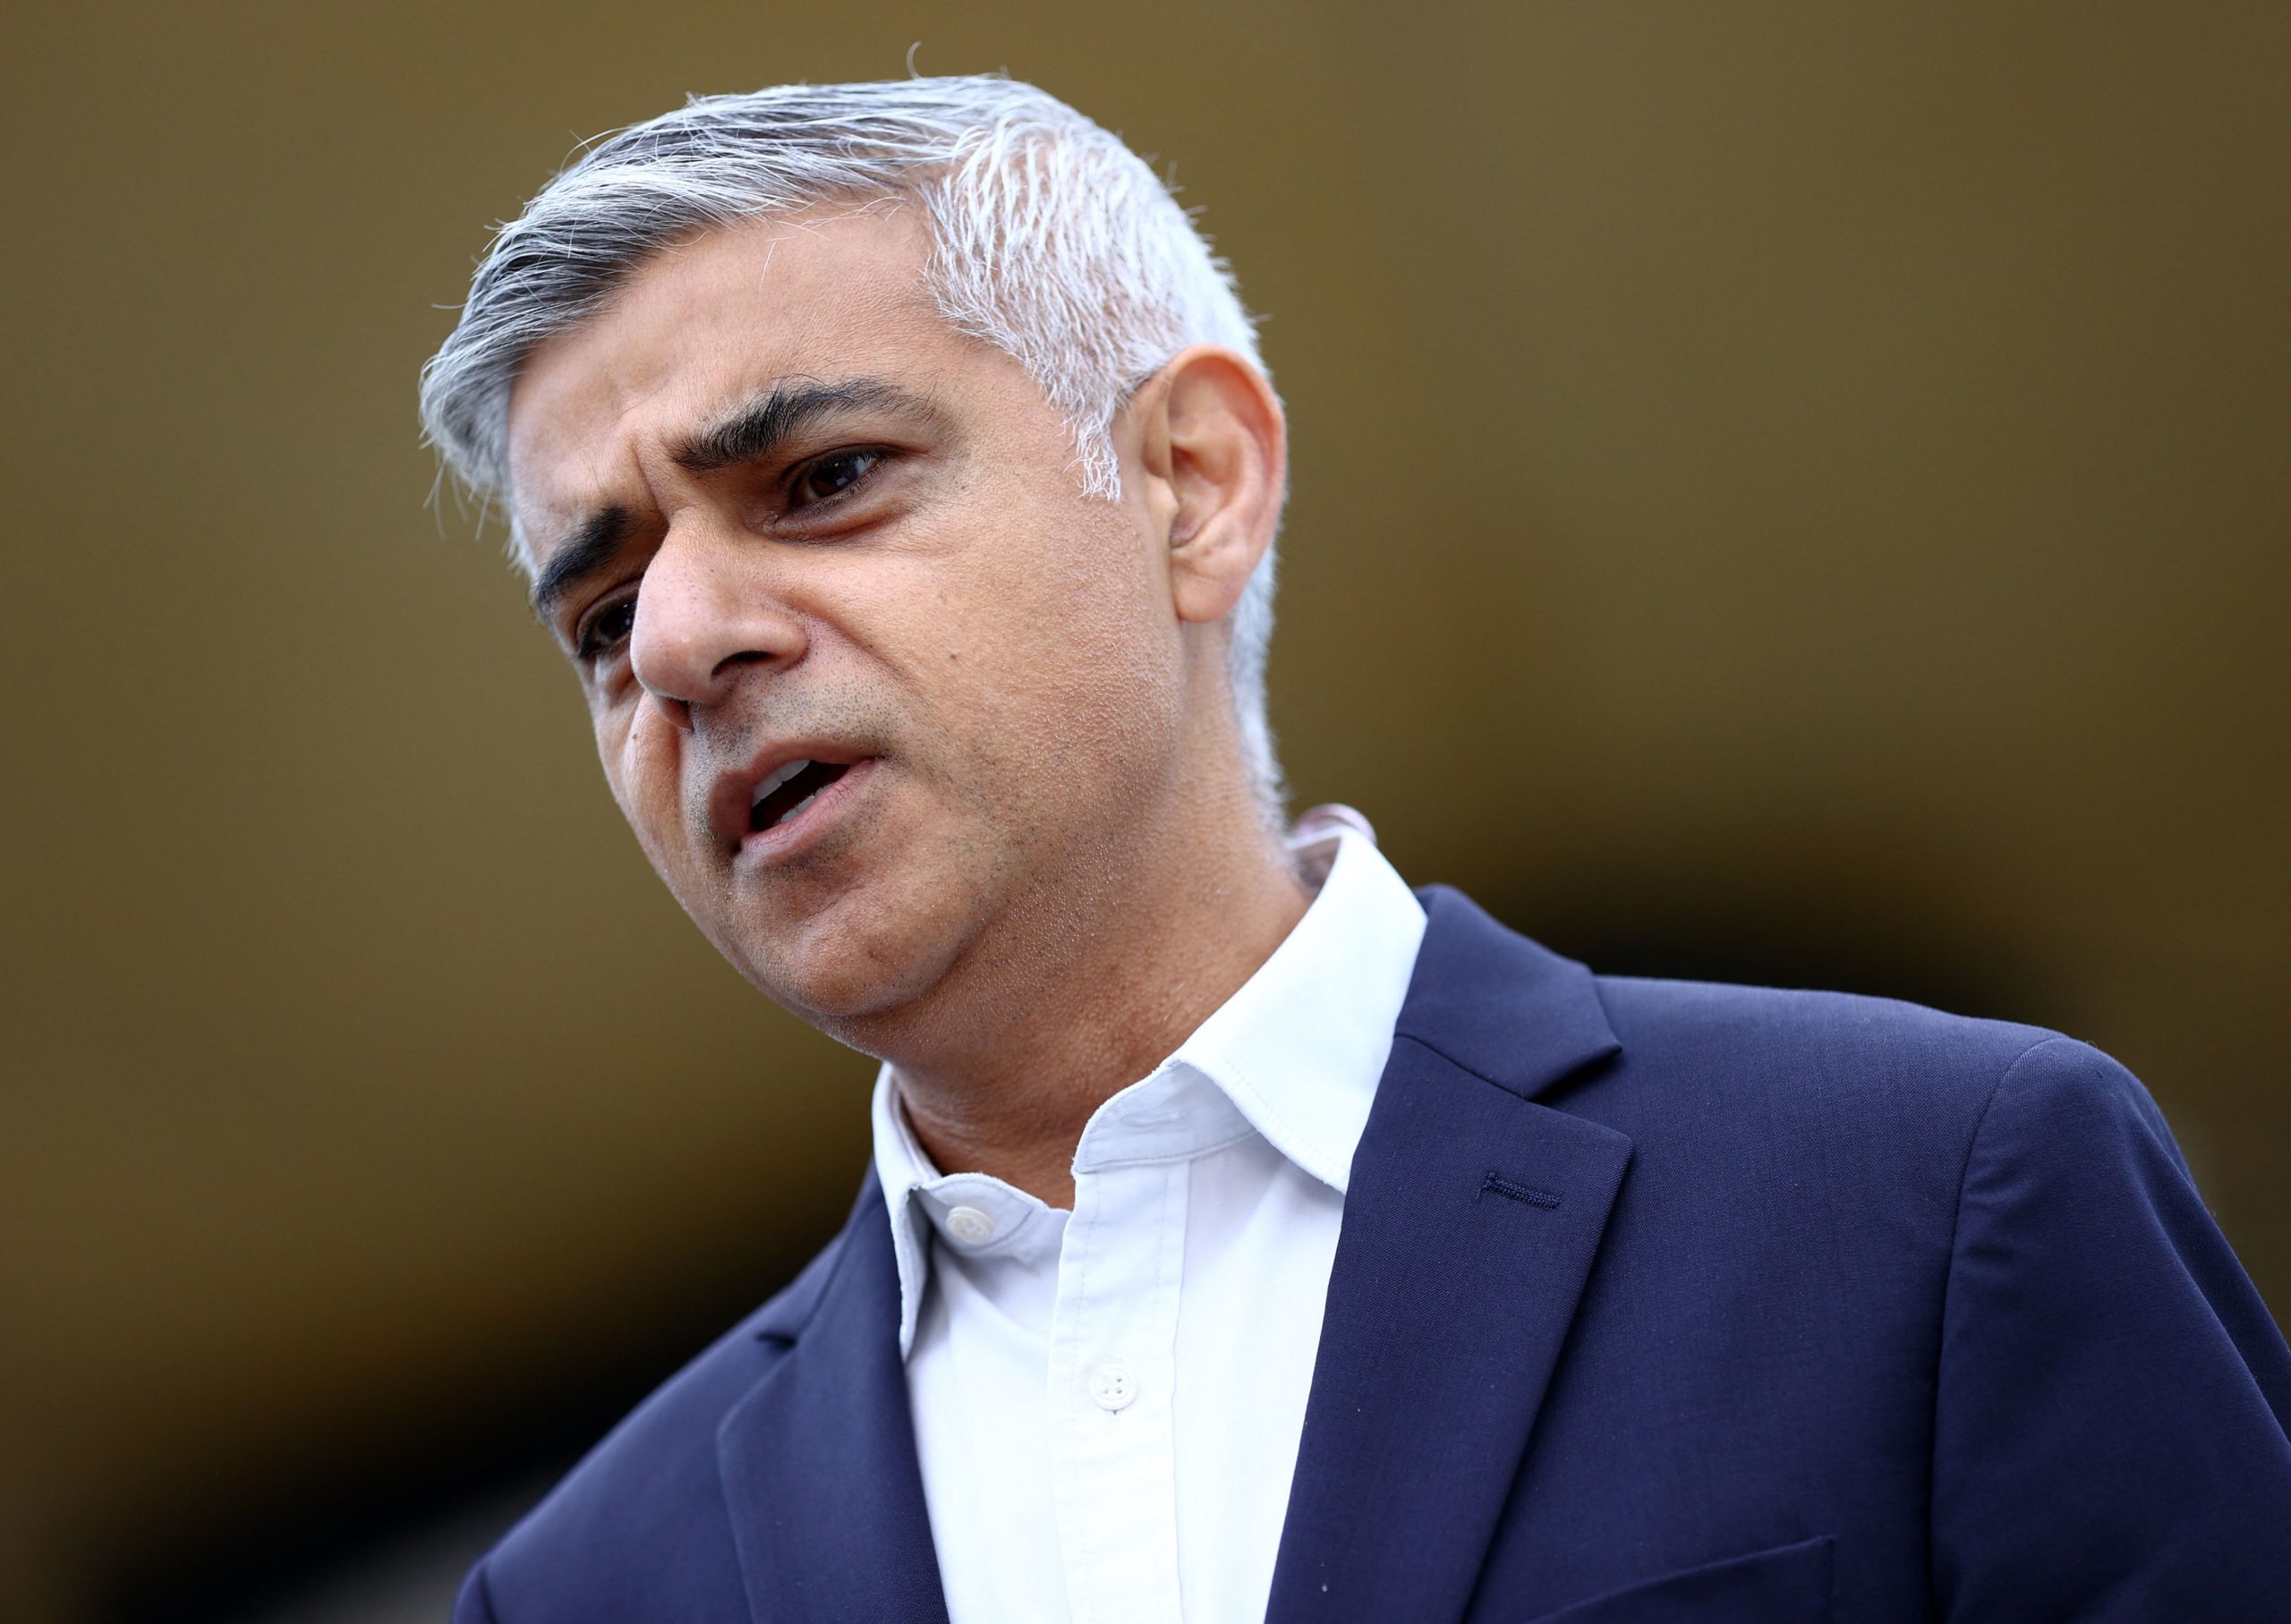 London Mayor Sadiq Khan weighs in on West Ham and David Moyes over Kurt Zouma decision